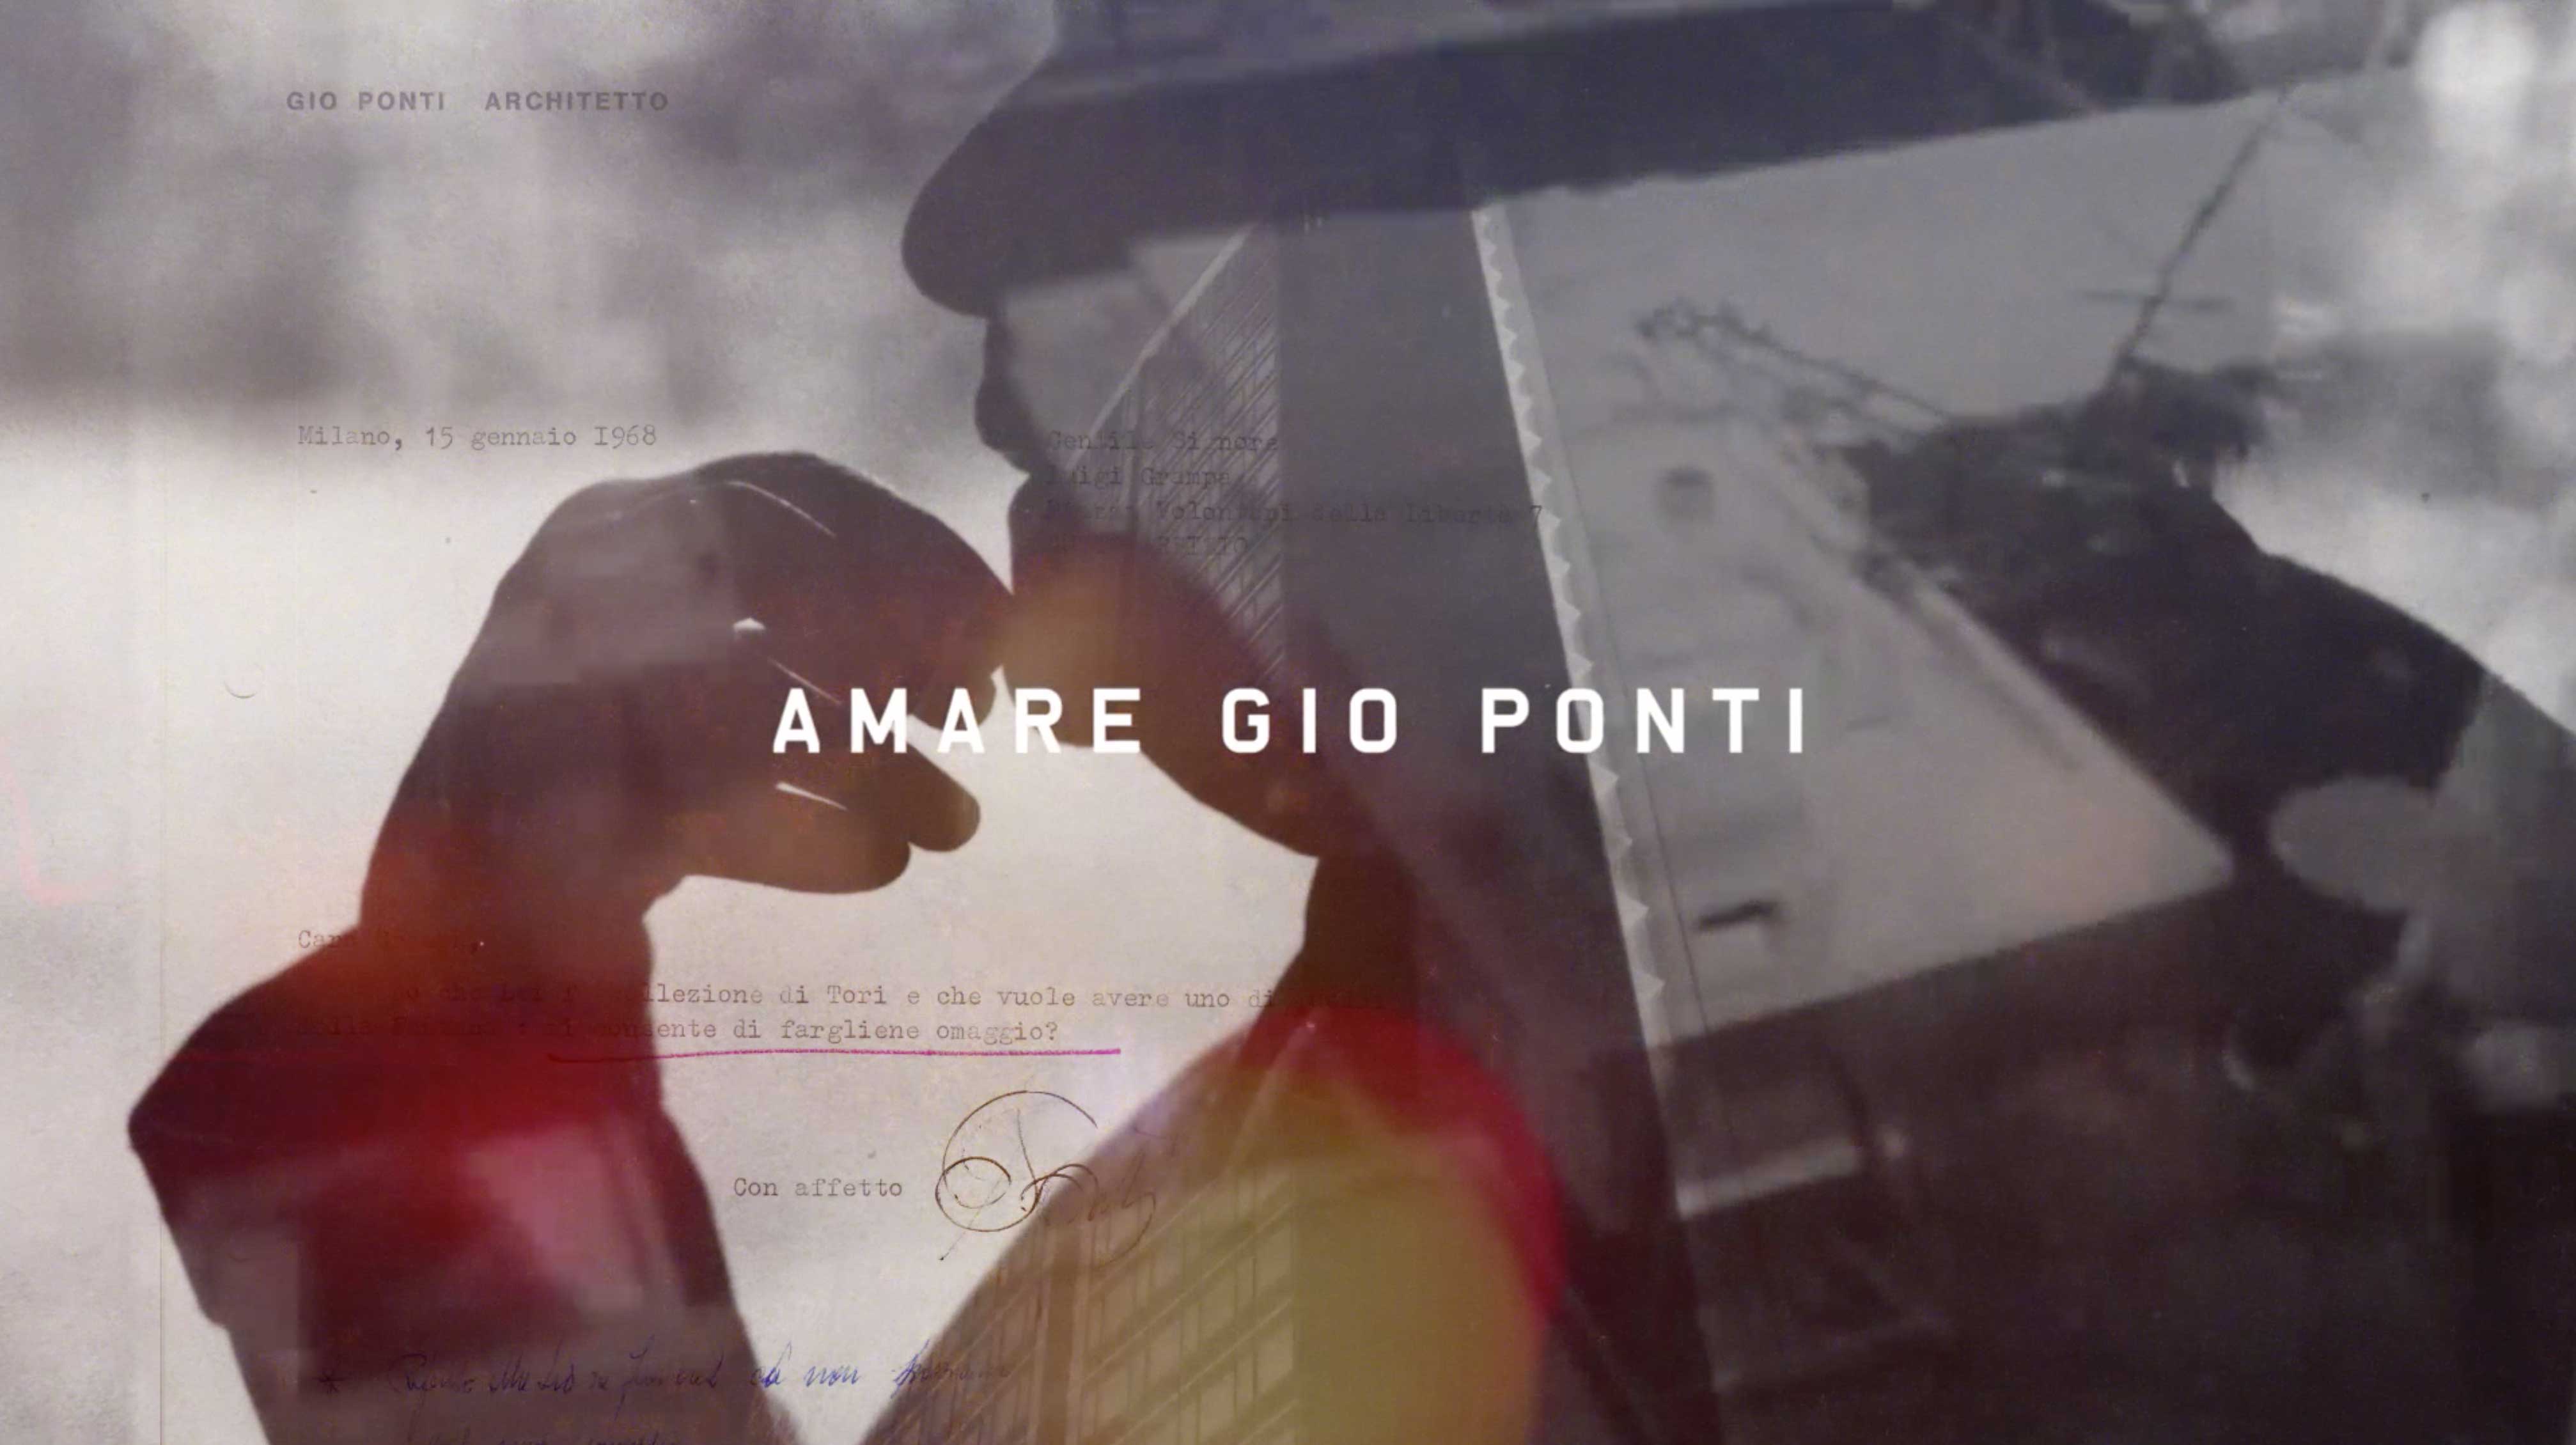 Biennale di Architettura Venice - Molteni&C presents “Amare Gio Ponti”